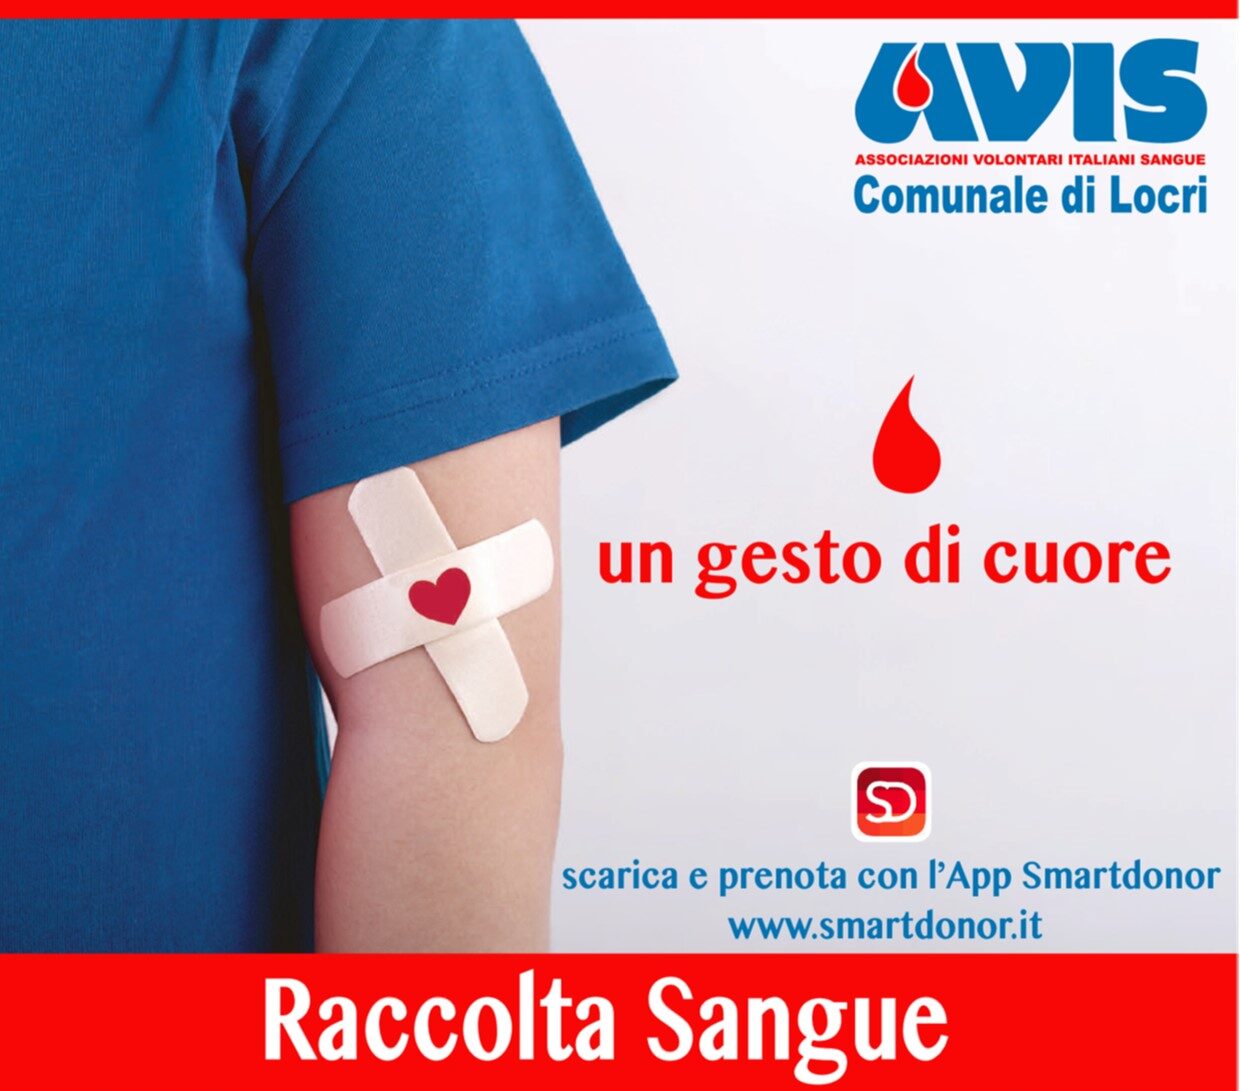 L’AVIS comunale di Locri comunica le date delle raccolte di sangue per il mese di marzo 2022